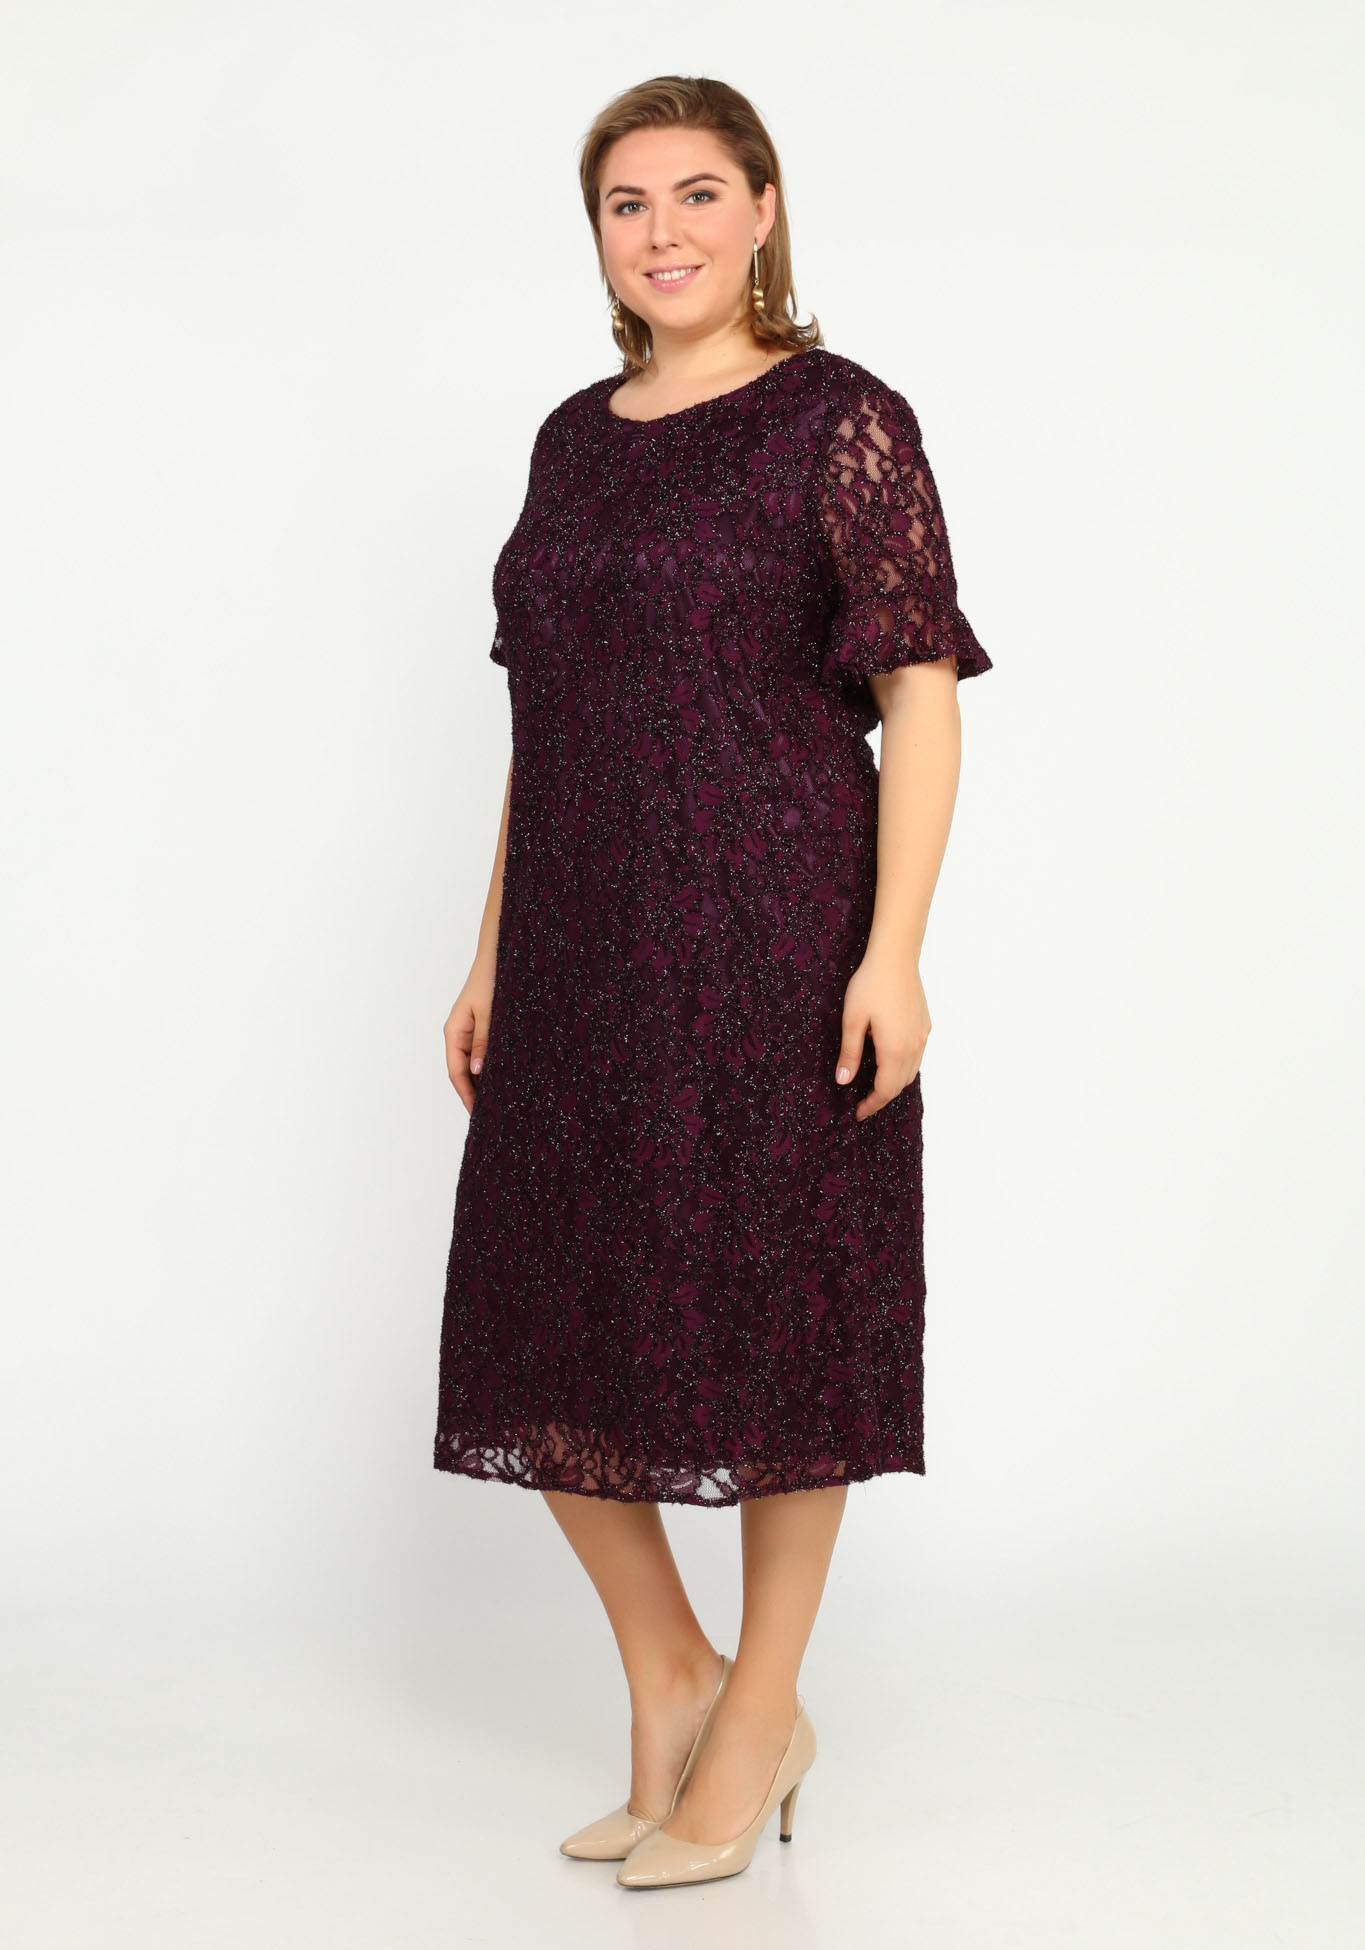 Платье с блеском и узором Bel Fiore, размер 48, цвет баклажановый - фото 7